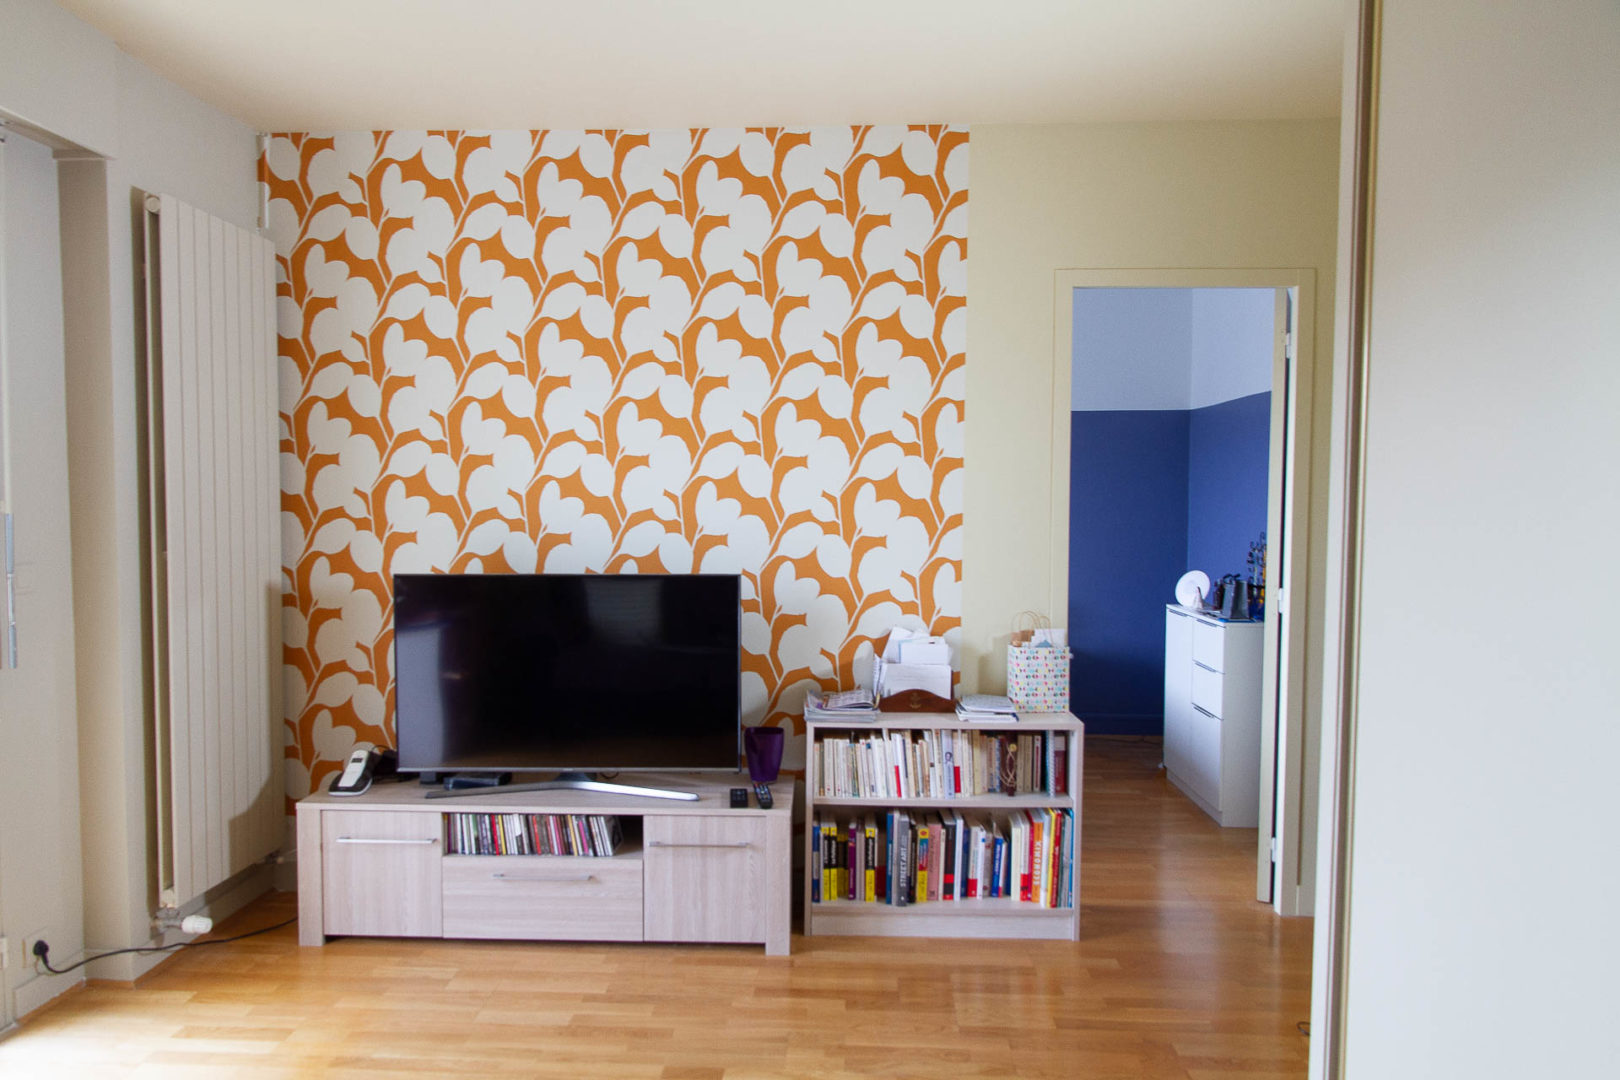 Appartement rénové avec mise en couleurs par la Fabrique Geneviève Naudin